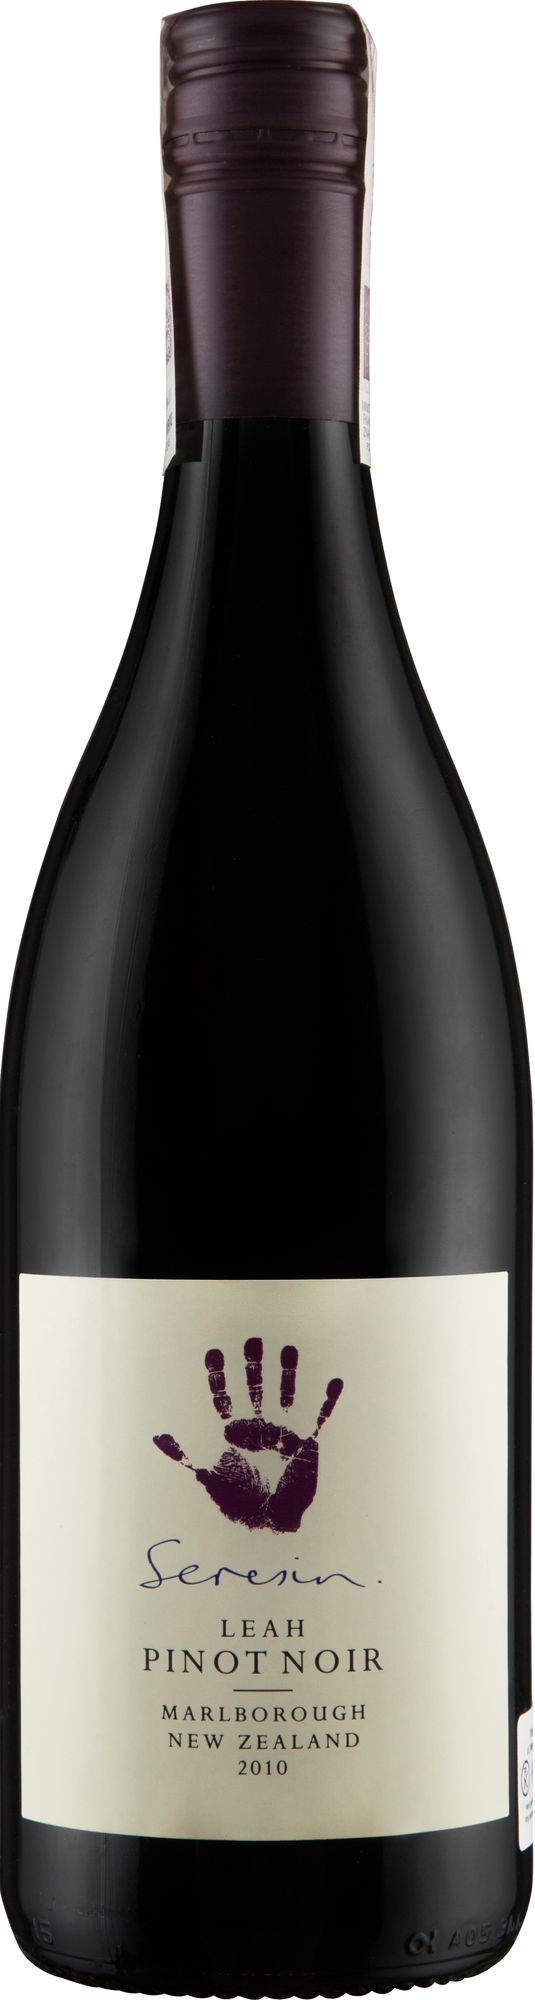 Wino Seresin Leah Pinot Noir Marlborough